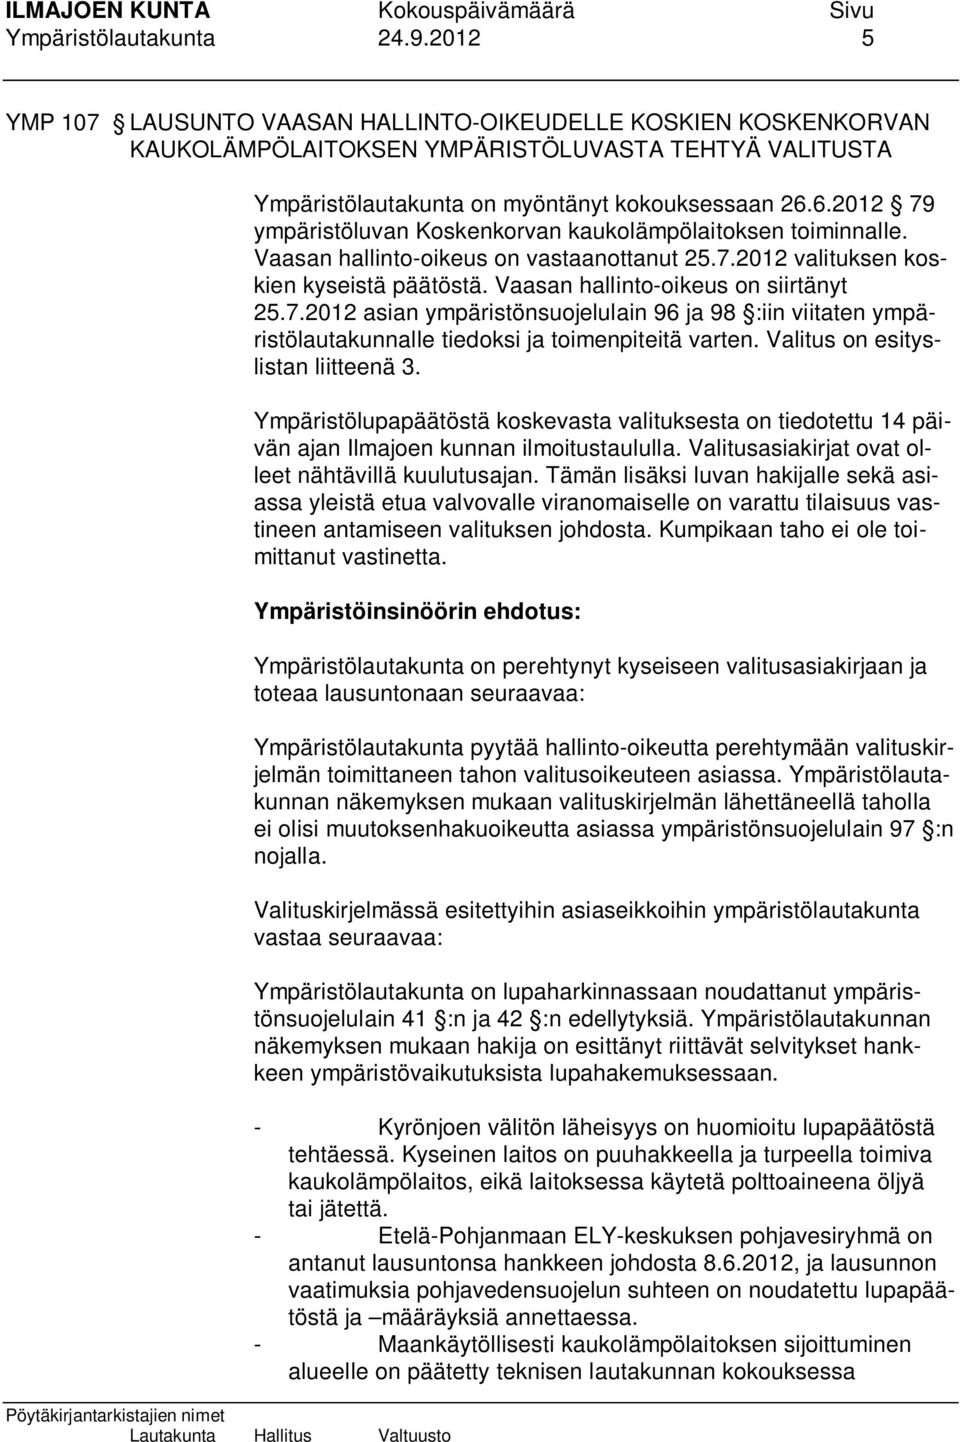 6.2012 79 ympäristöluvan Koskenkorvan kaukolämpölaitoksen toiminnalle. Vaasan hallinto-oikeus on vastaanottanut 25.7.2012 valituksen koskien kyseistä päätöstä. Vaasan hallinto-oikeus on siirtänyt 25.